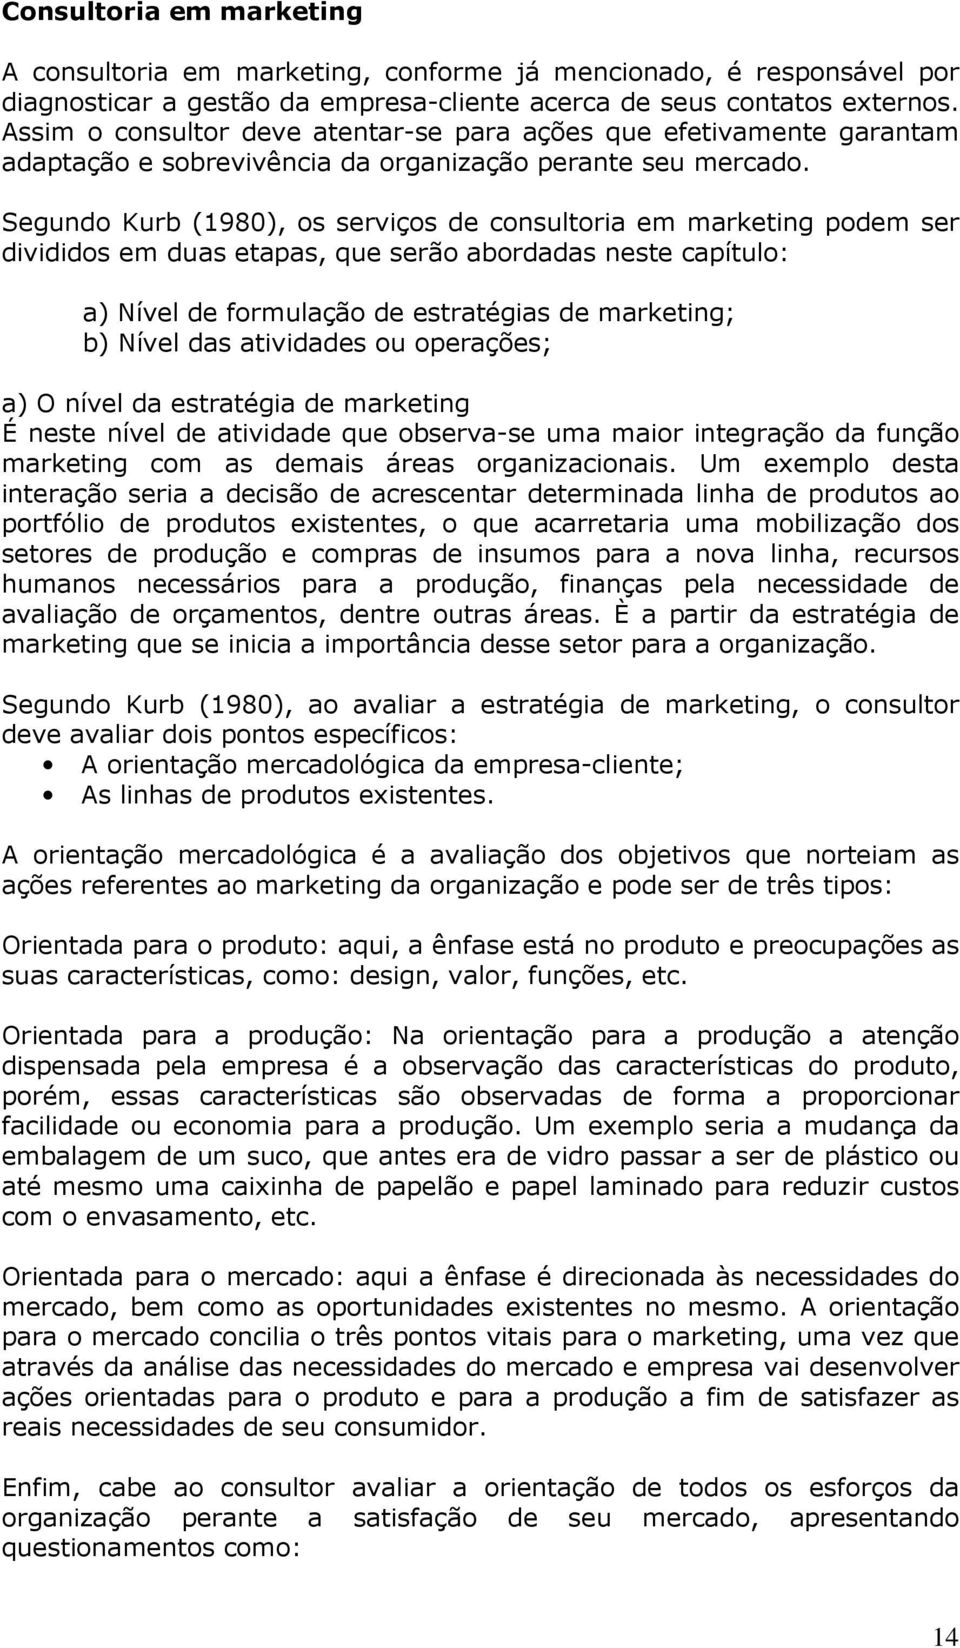 Segundo Kurb (1980), os serviços de consultoria em marketing podem ser divididos em duas etapas, que serão abordadas neste capítulo: a) Nível de formulação de estratégias de marketing; b) Nível das